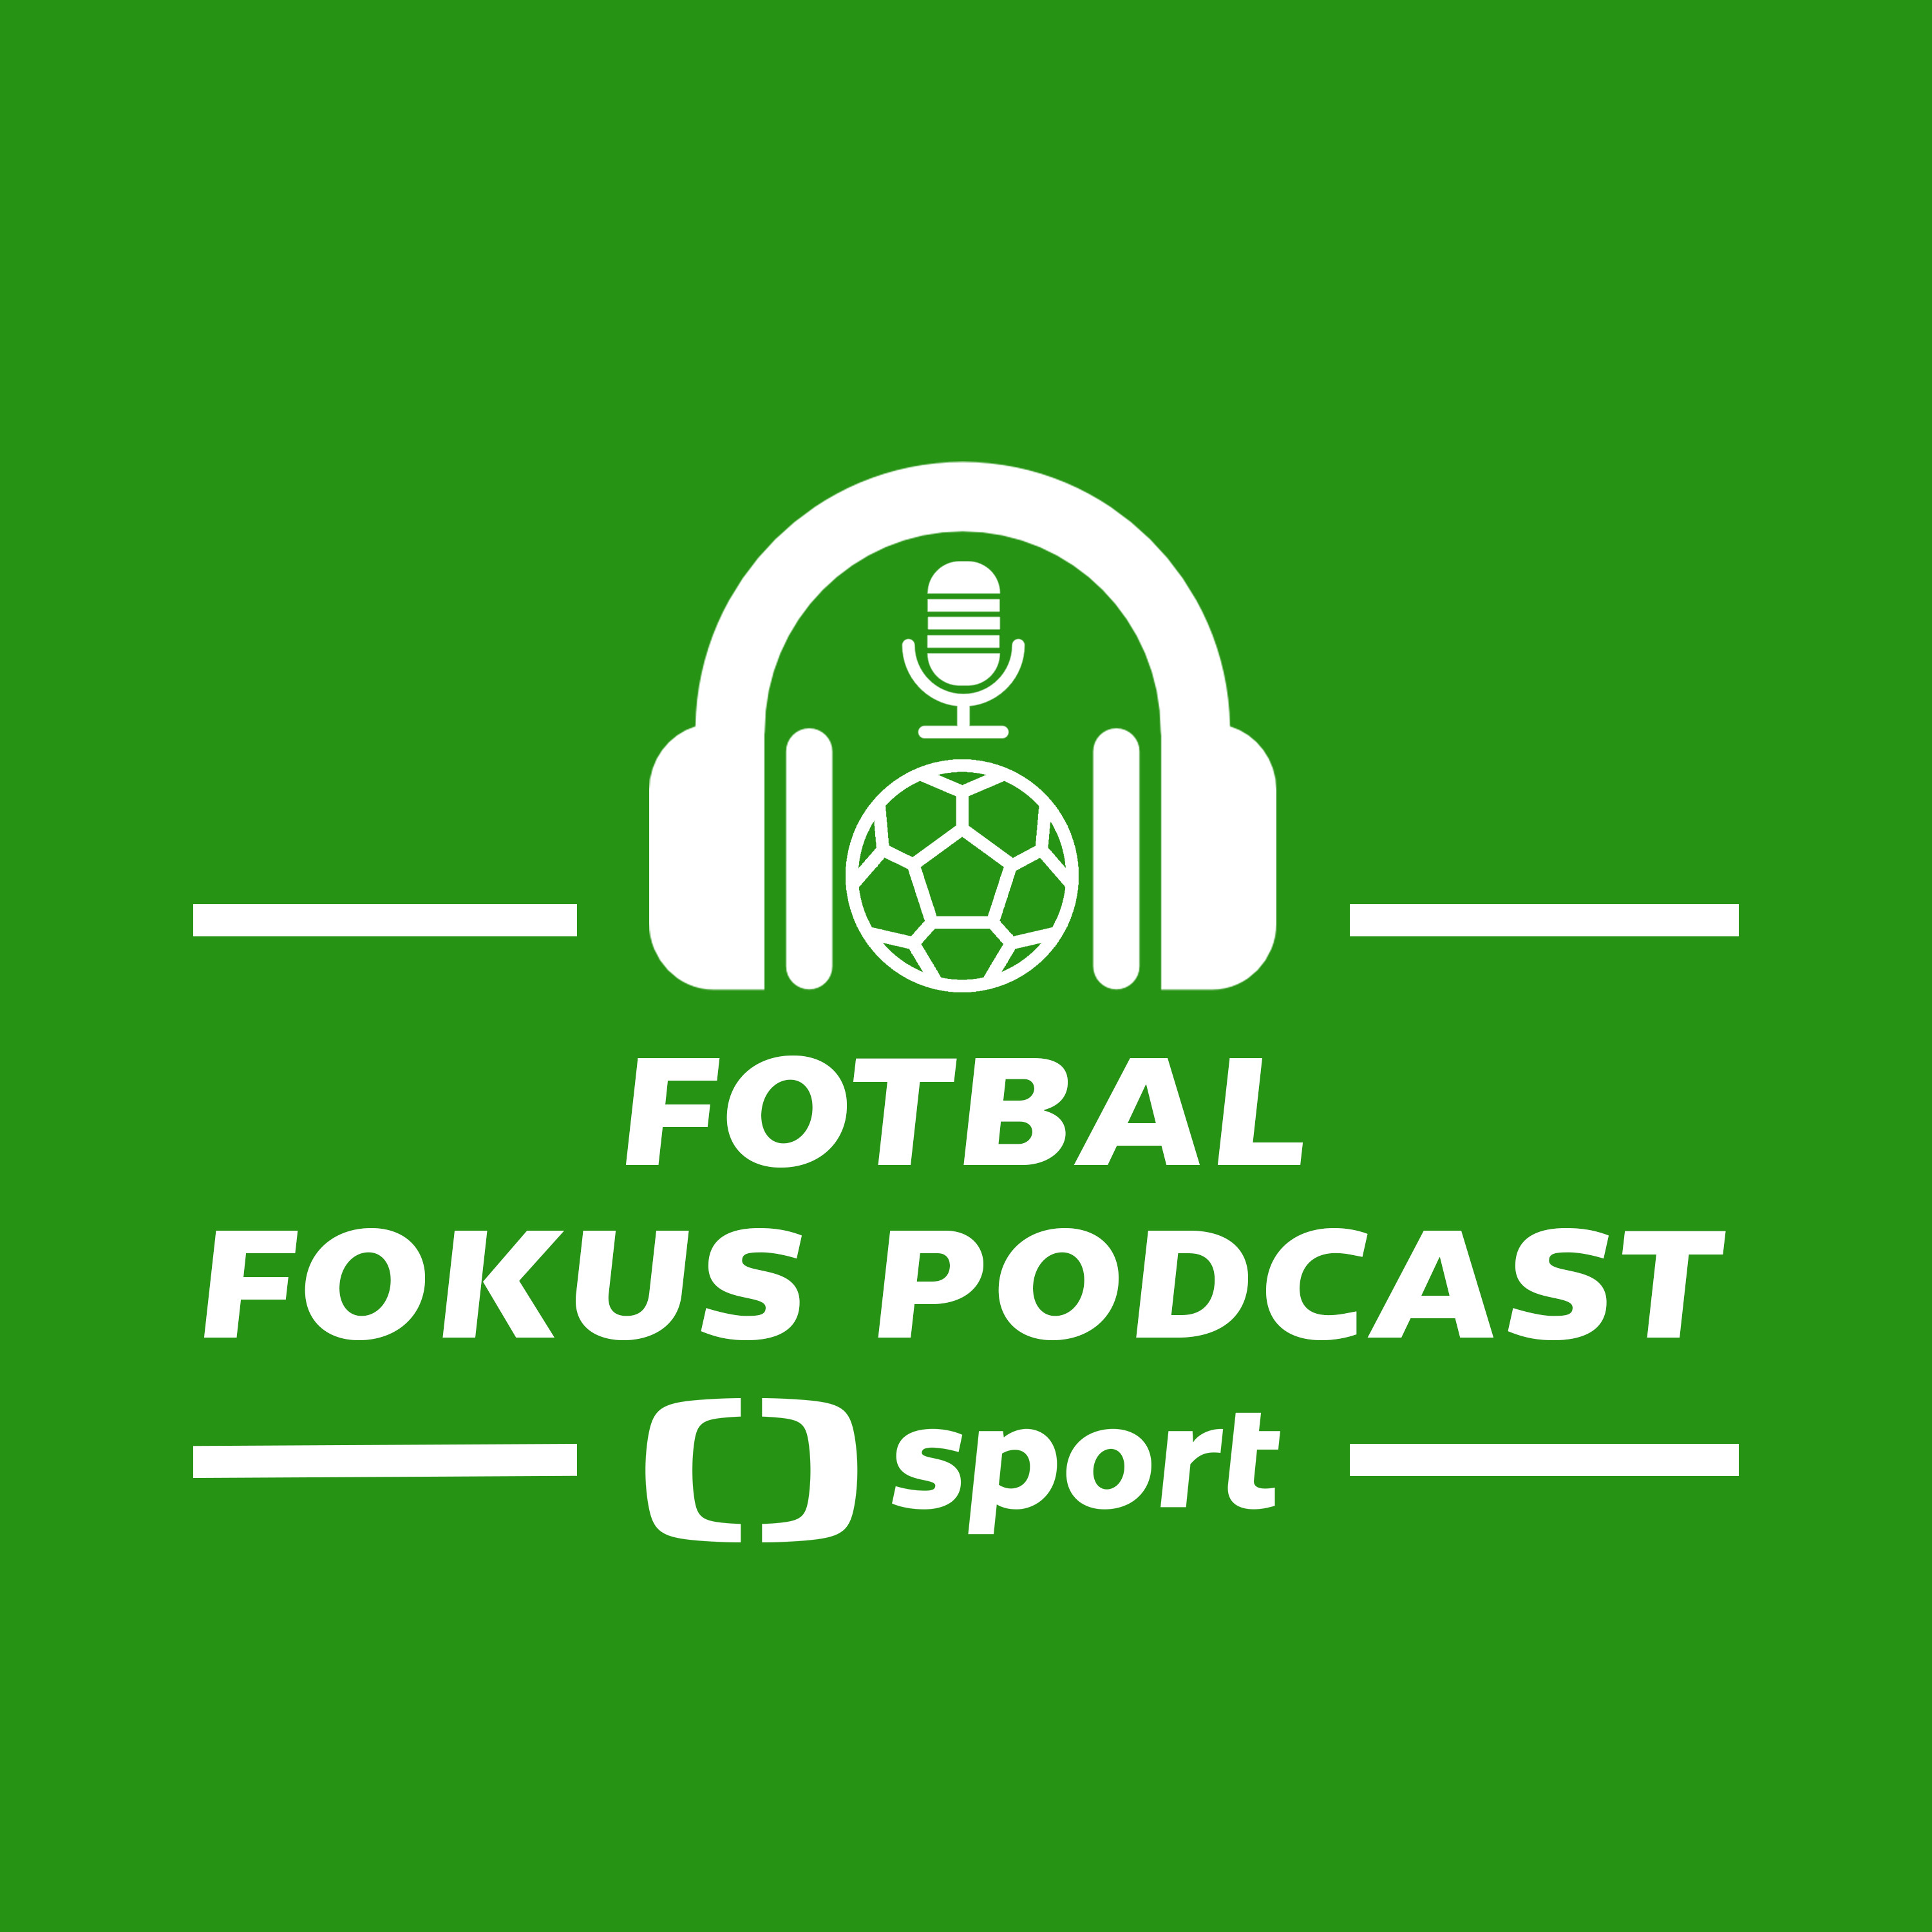 Fotbal fokus podcast: Černý v ráži, šance lvíčat na Euru a Peltův restart